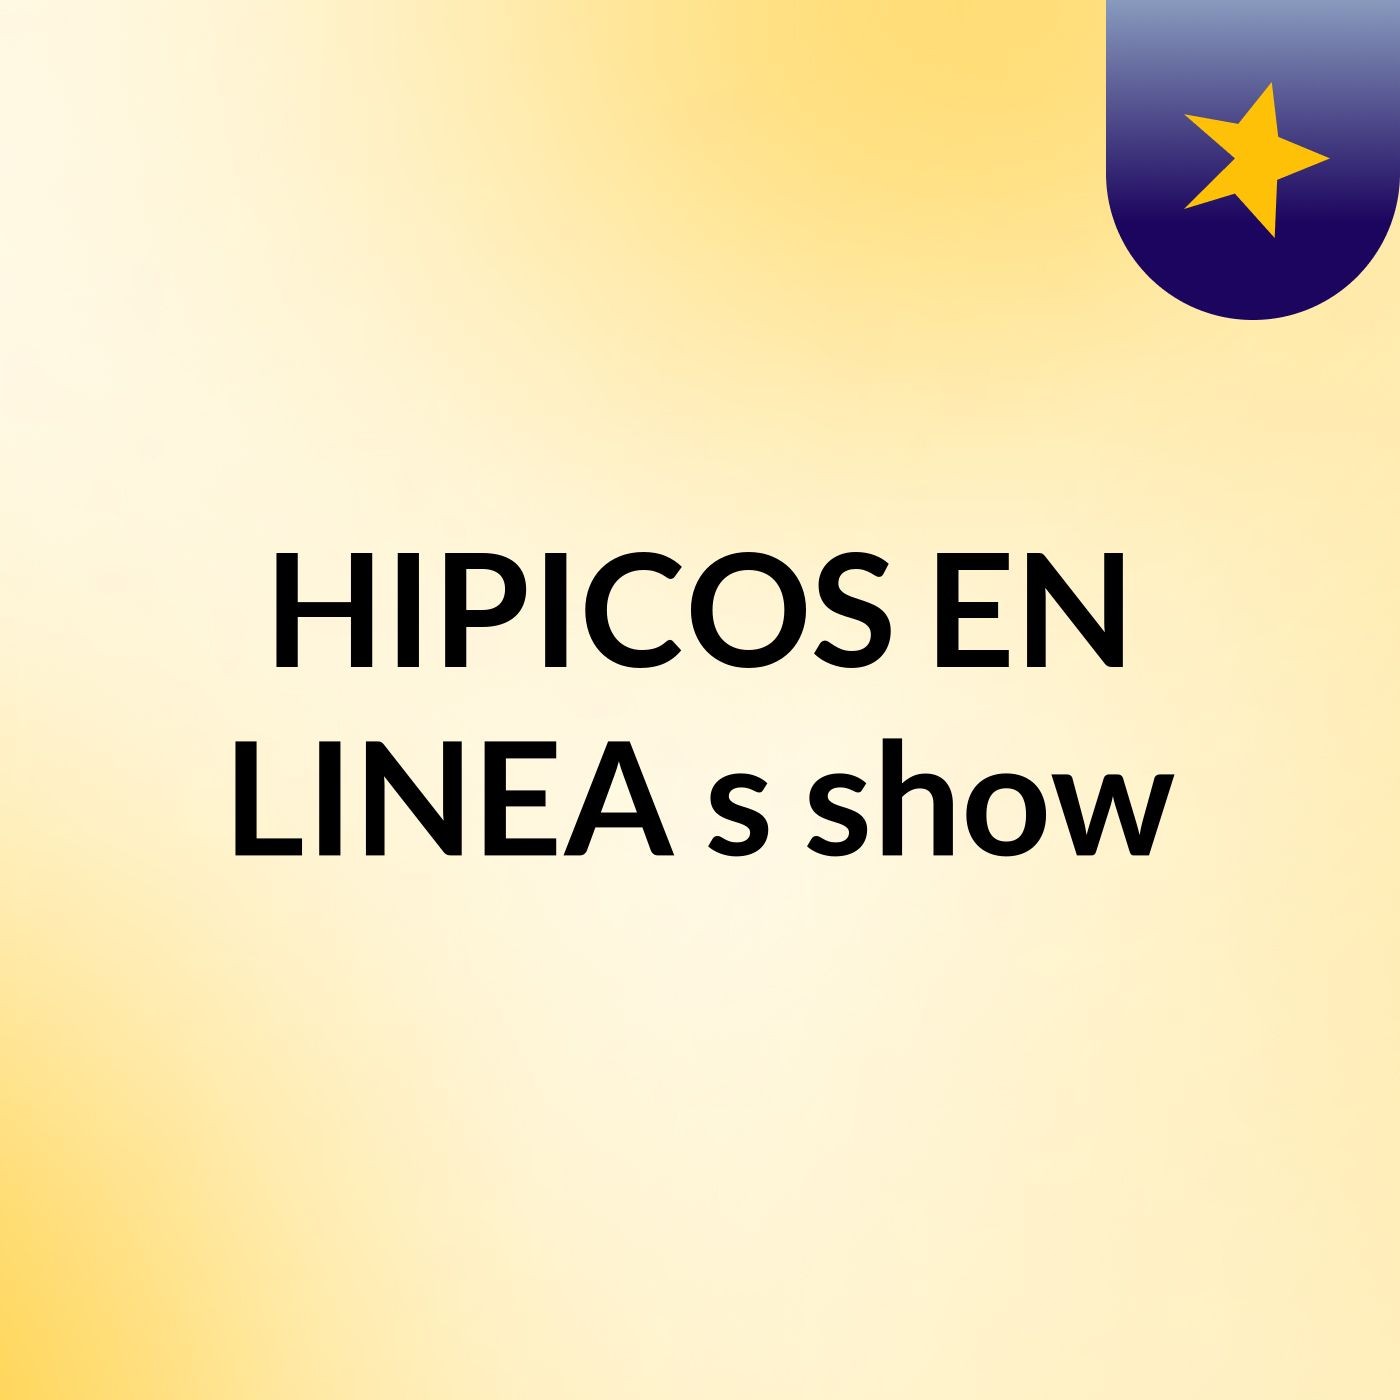 HIPICOS EN LINEA's show